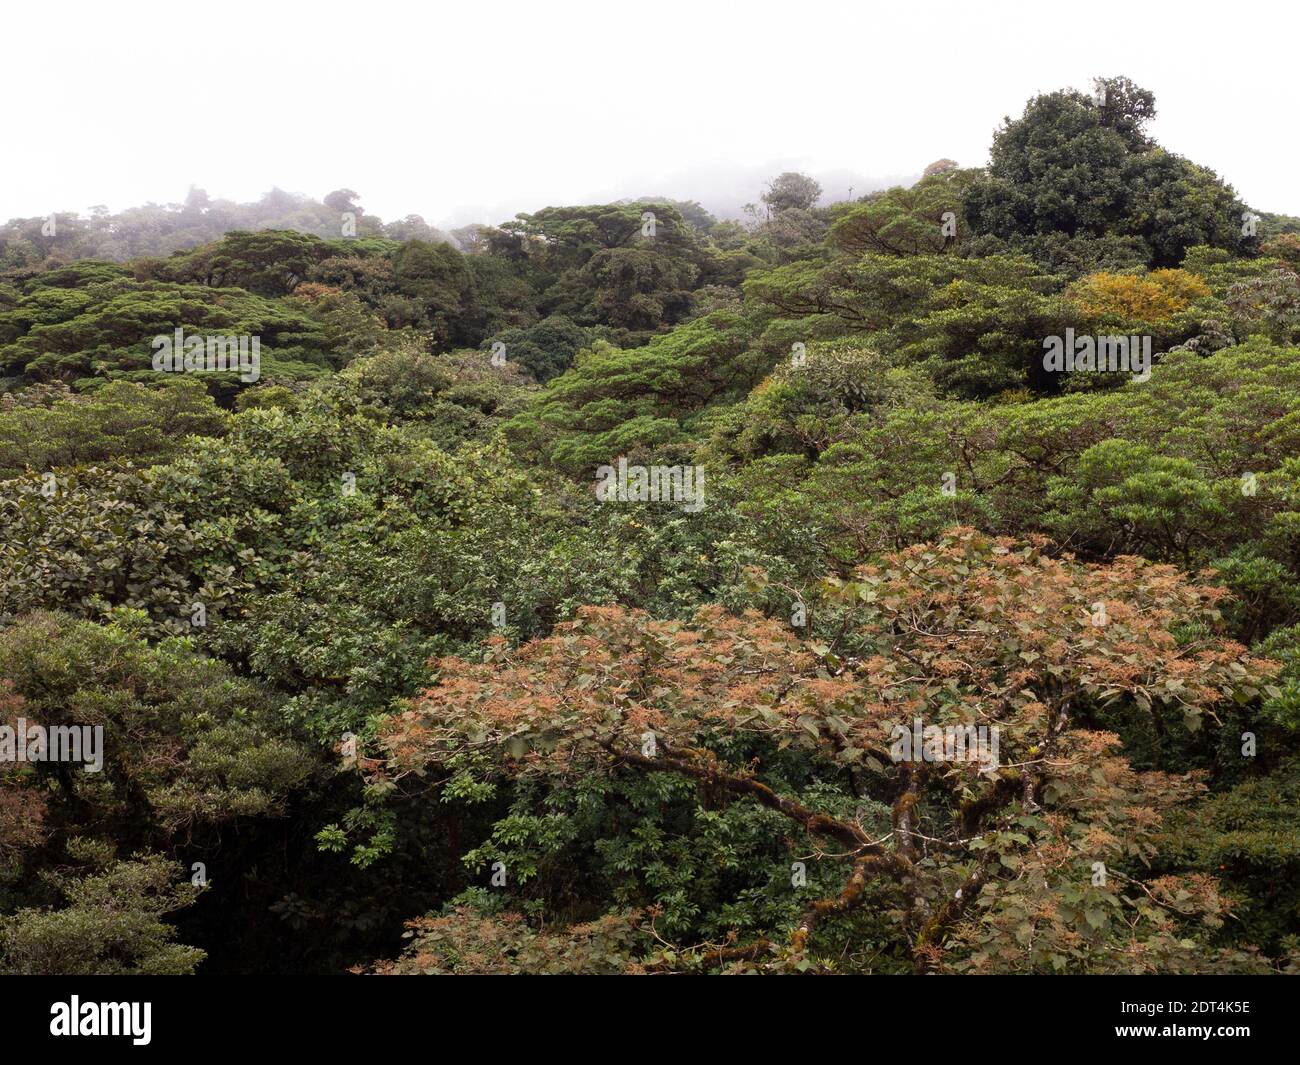 Fai un'escursione attraverso la foresta pluviale della Costa Rica con splendide viste sulle cime degli alberi della riserva della foresta pluviale di Santa Elena. Foto Stock